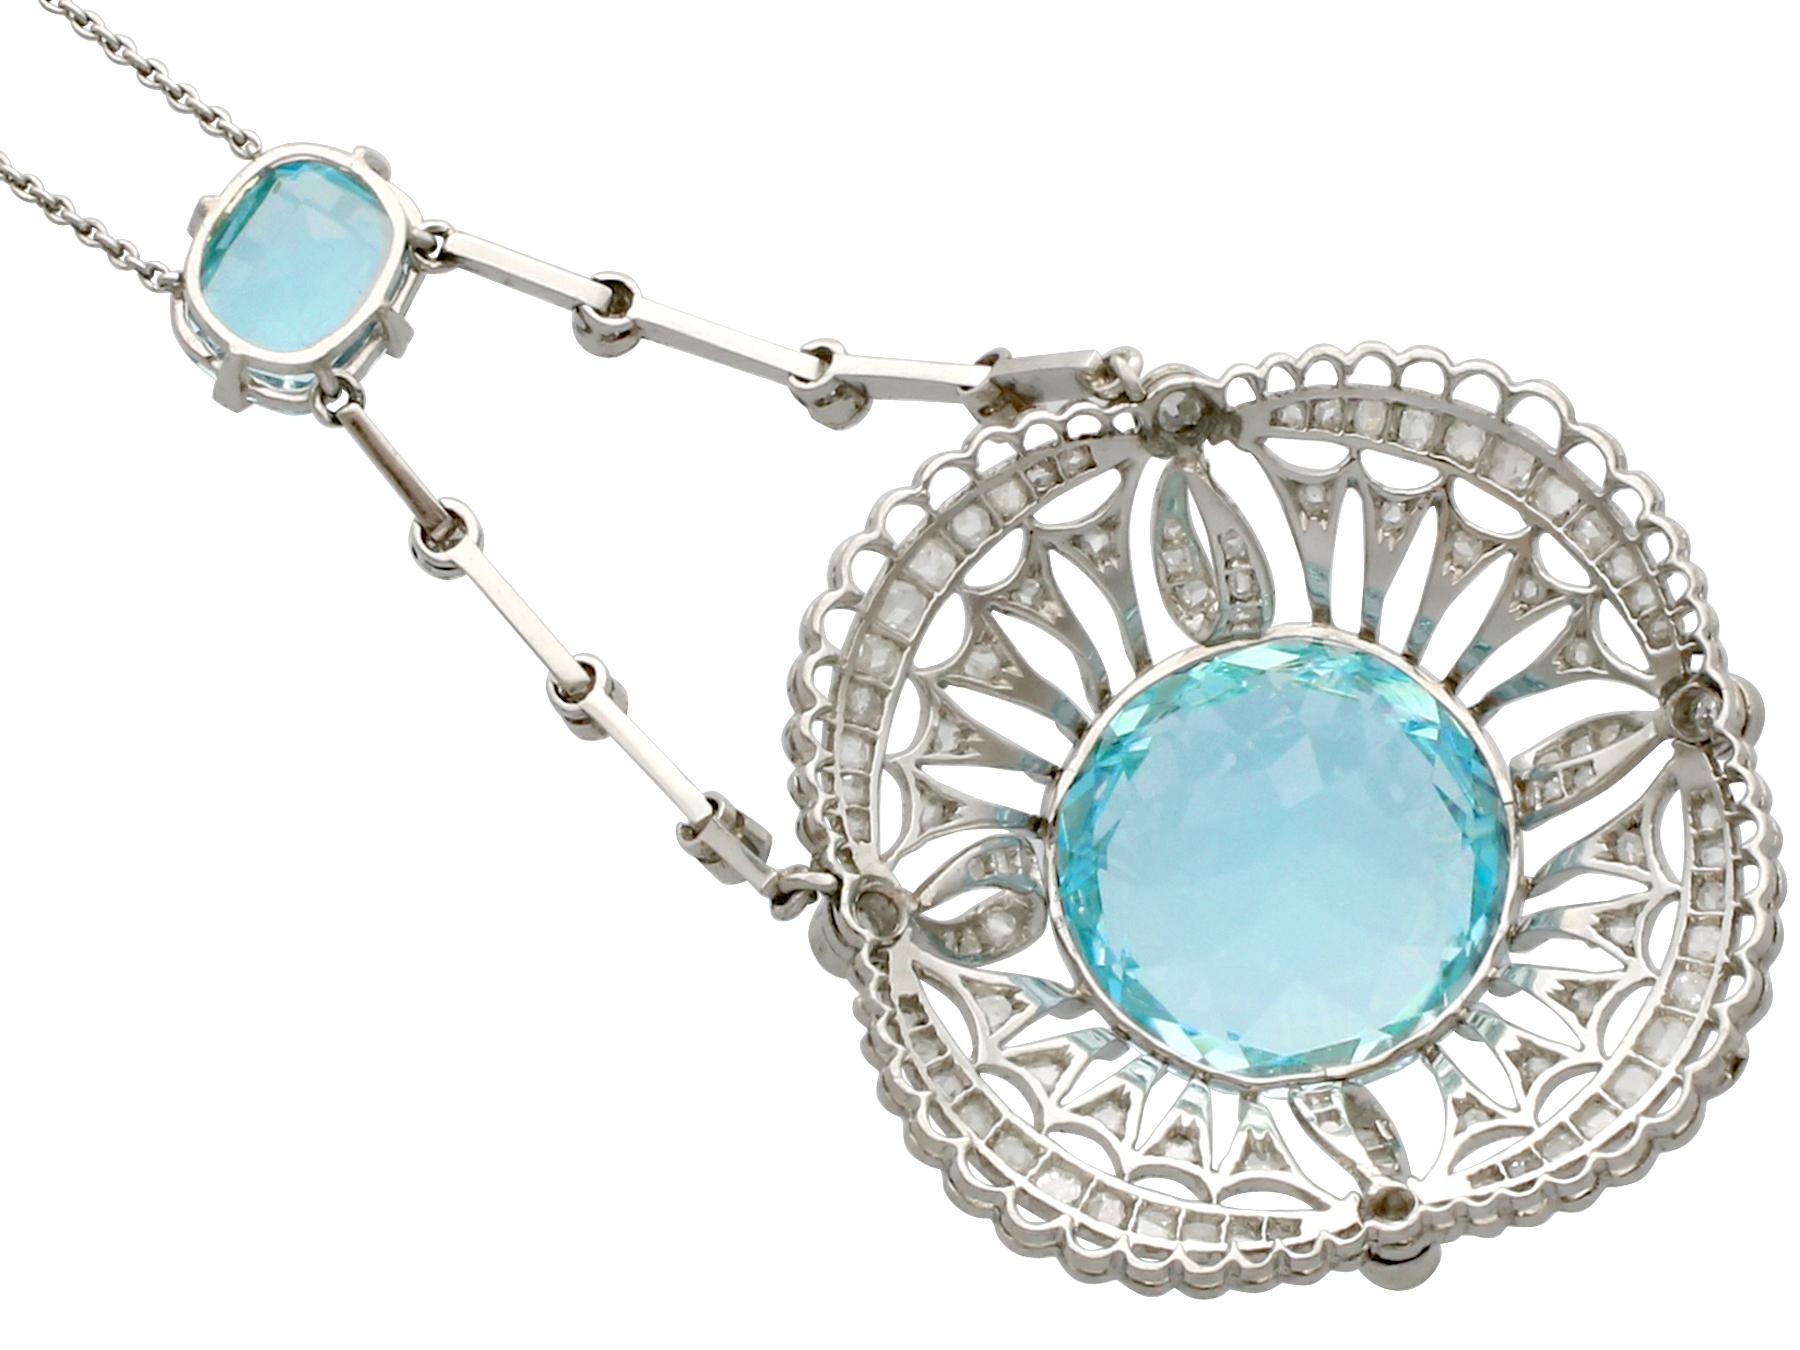 George V Antique 10.97 Carat Aquamarine, Topaz and Diamond Platinum Necklace (1920s) For Sale